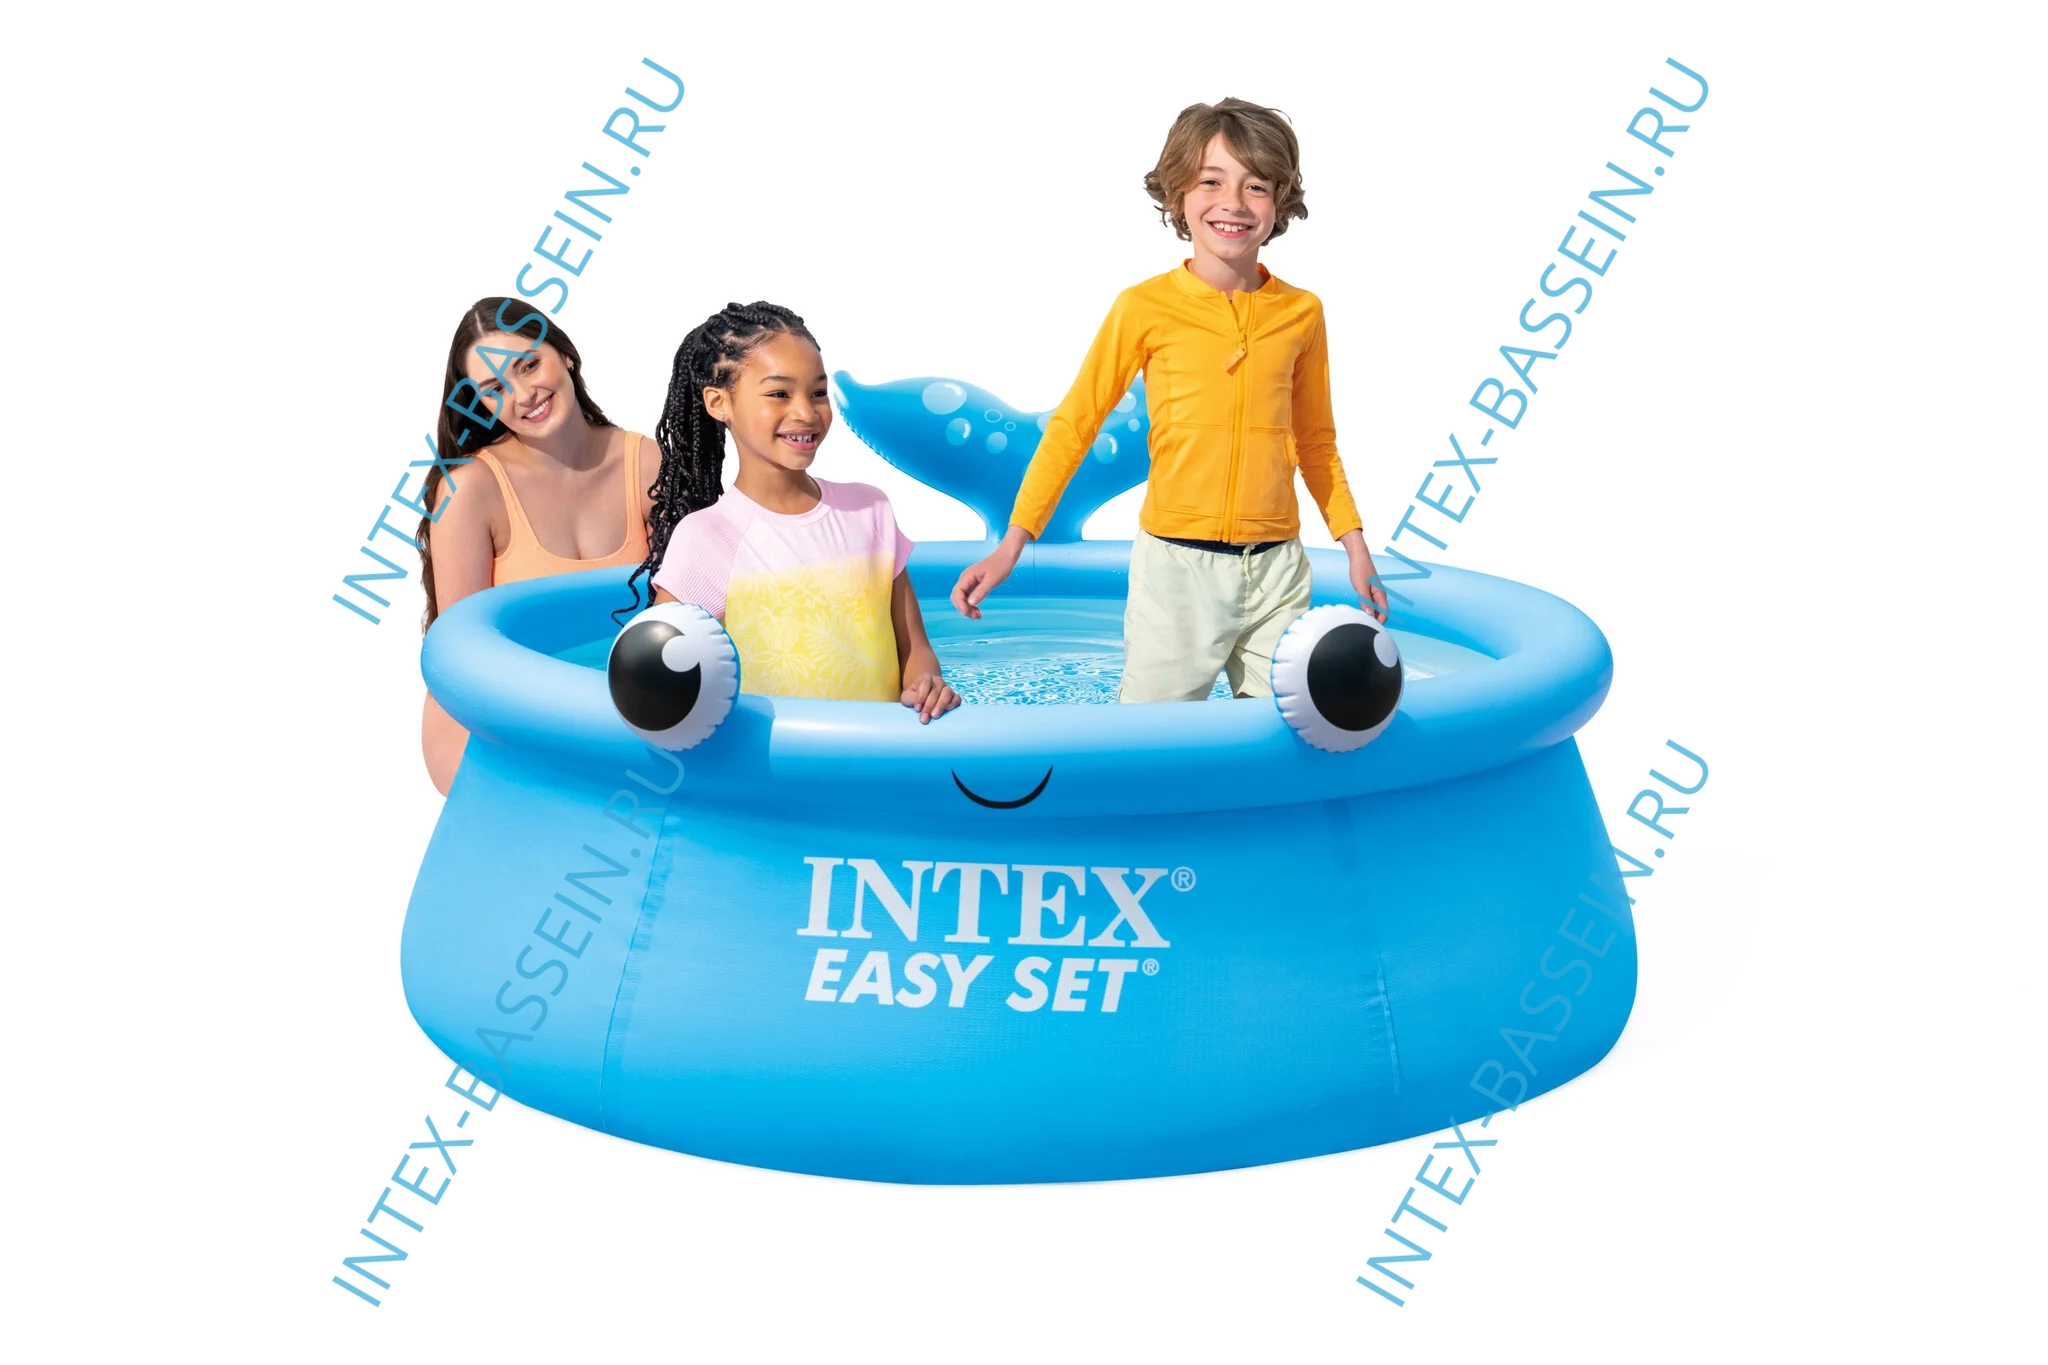 Надувной бассейн INTEX Easy Set 1.83 x 0.51 м, артикул 26102